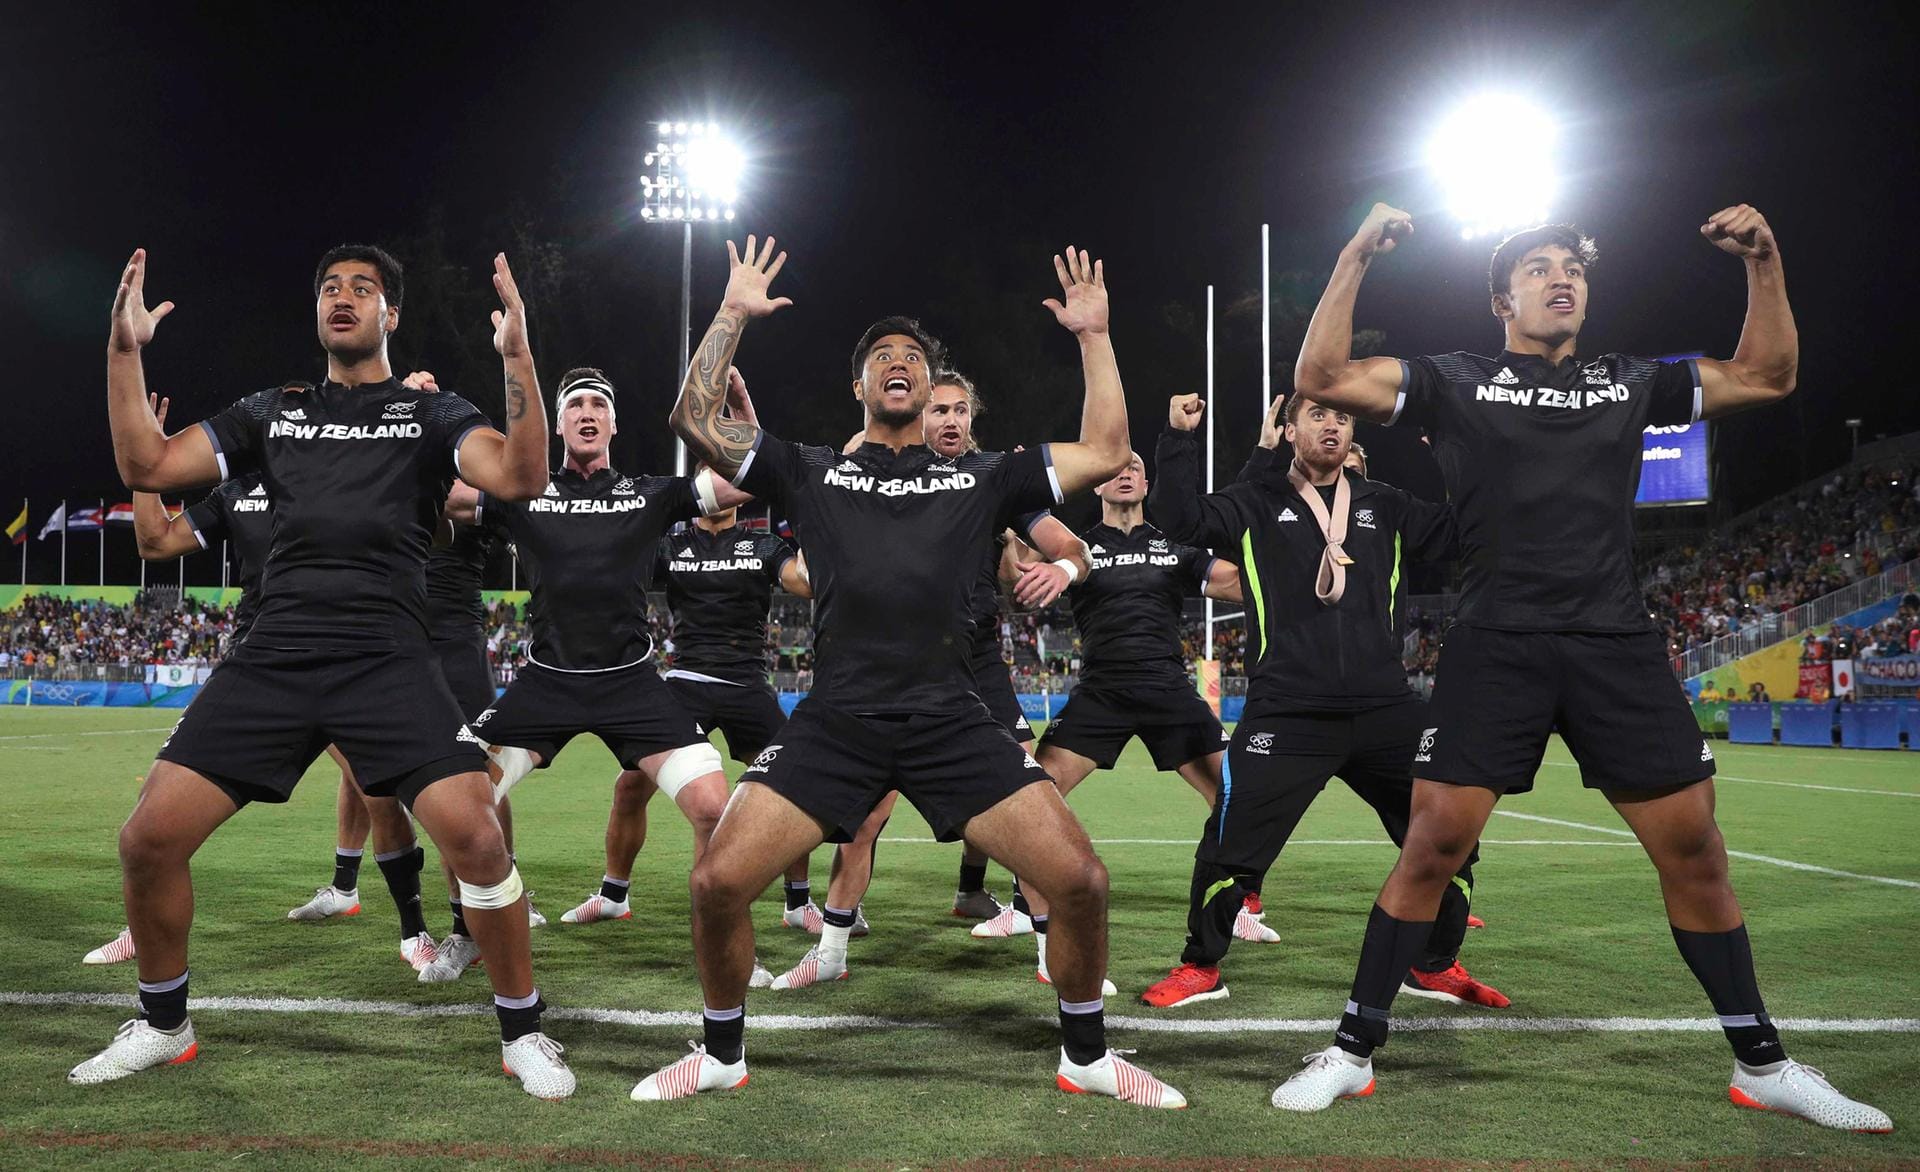 Tanzeinlage: Das Rugby-Team aus Neuseeland brachte sich für dem Spiel um Platz fünf gegen Argentinien in Stimmung. Mit Erfolg: Neuseeland gewann mit 17:14.